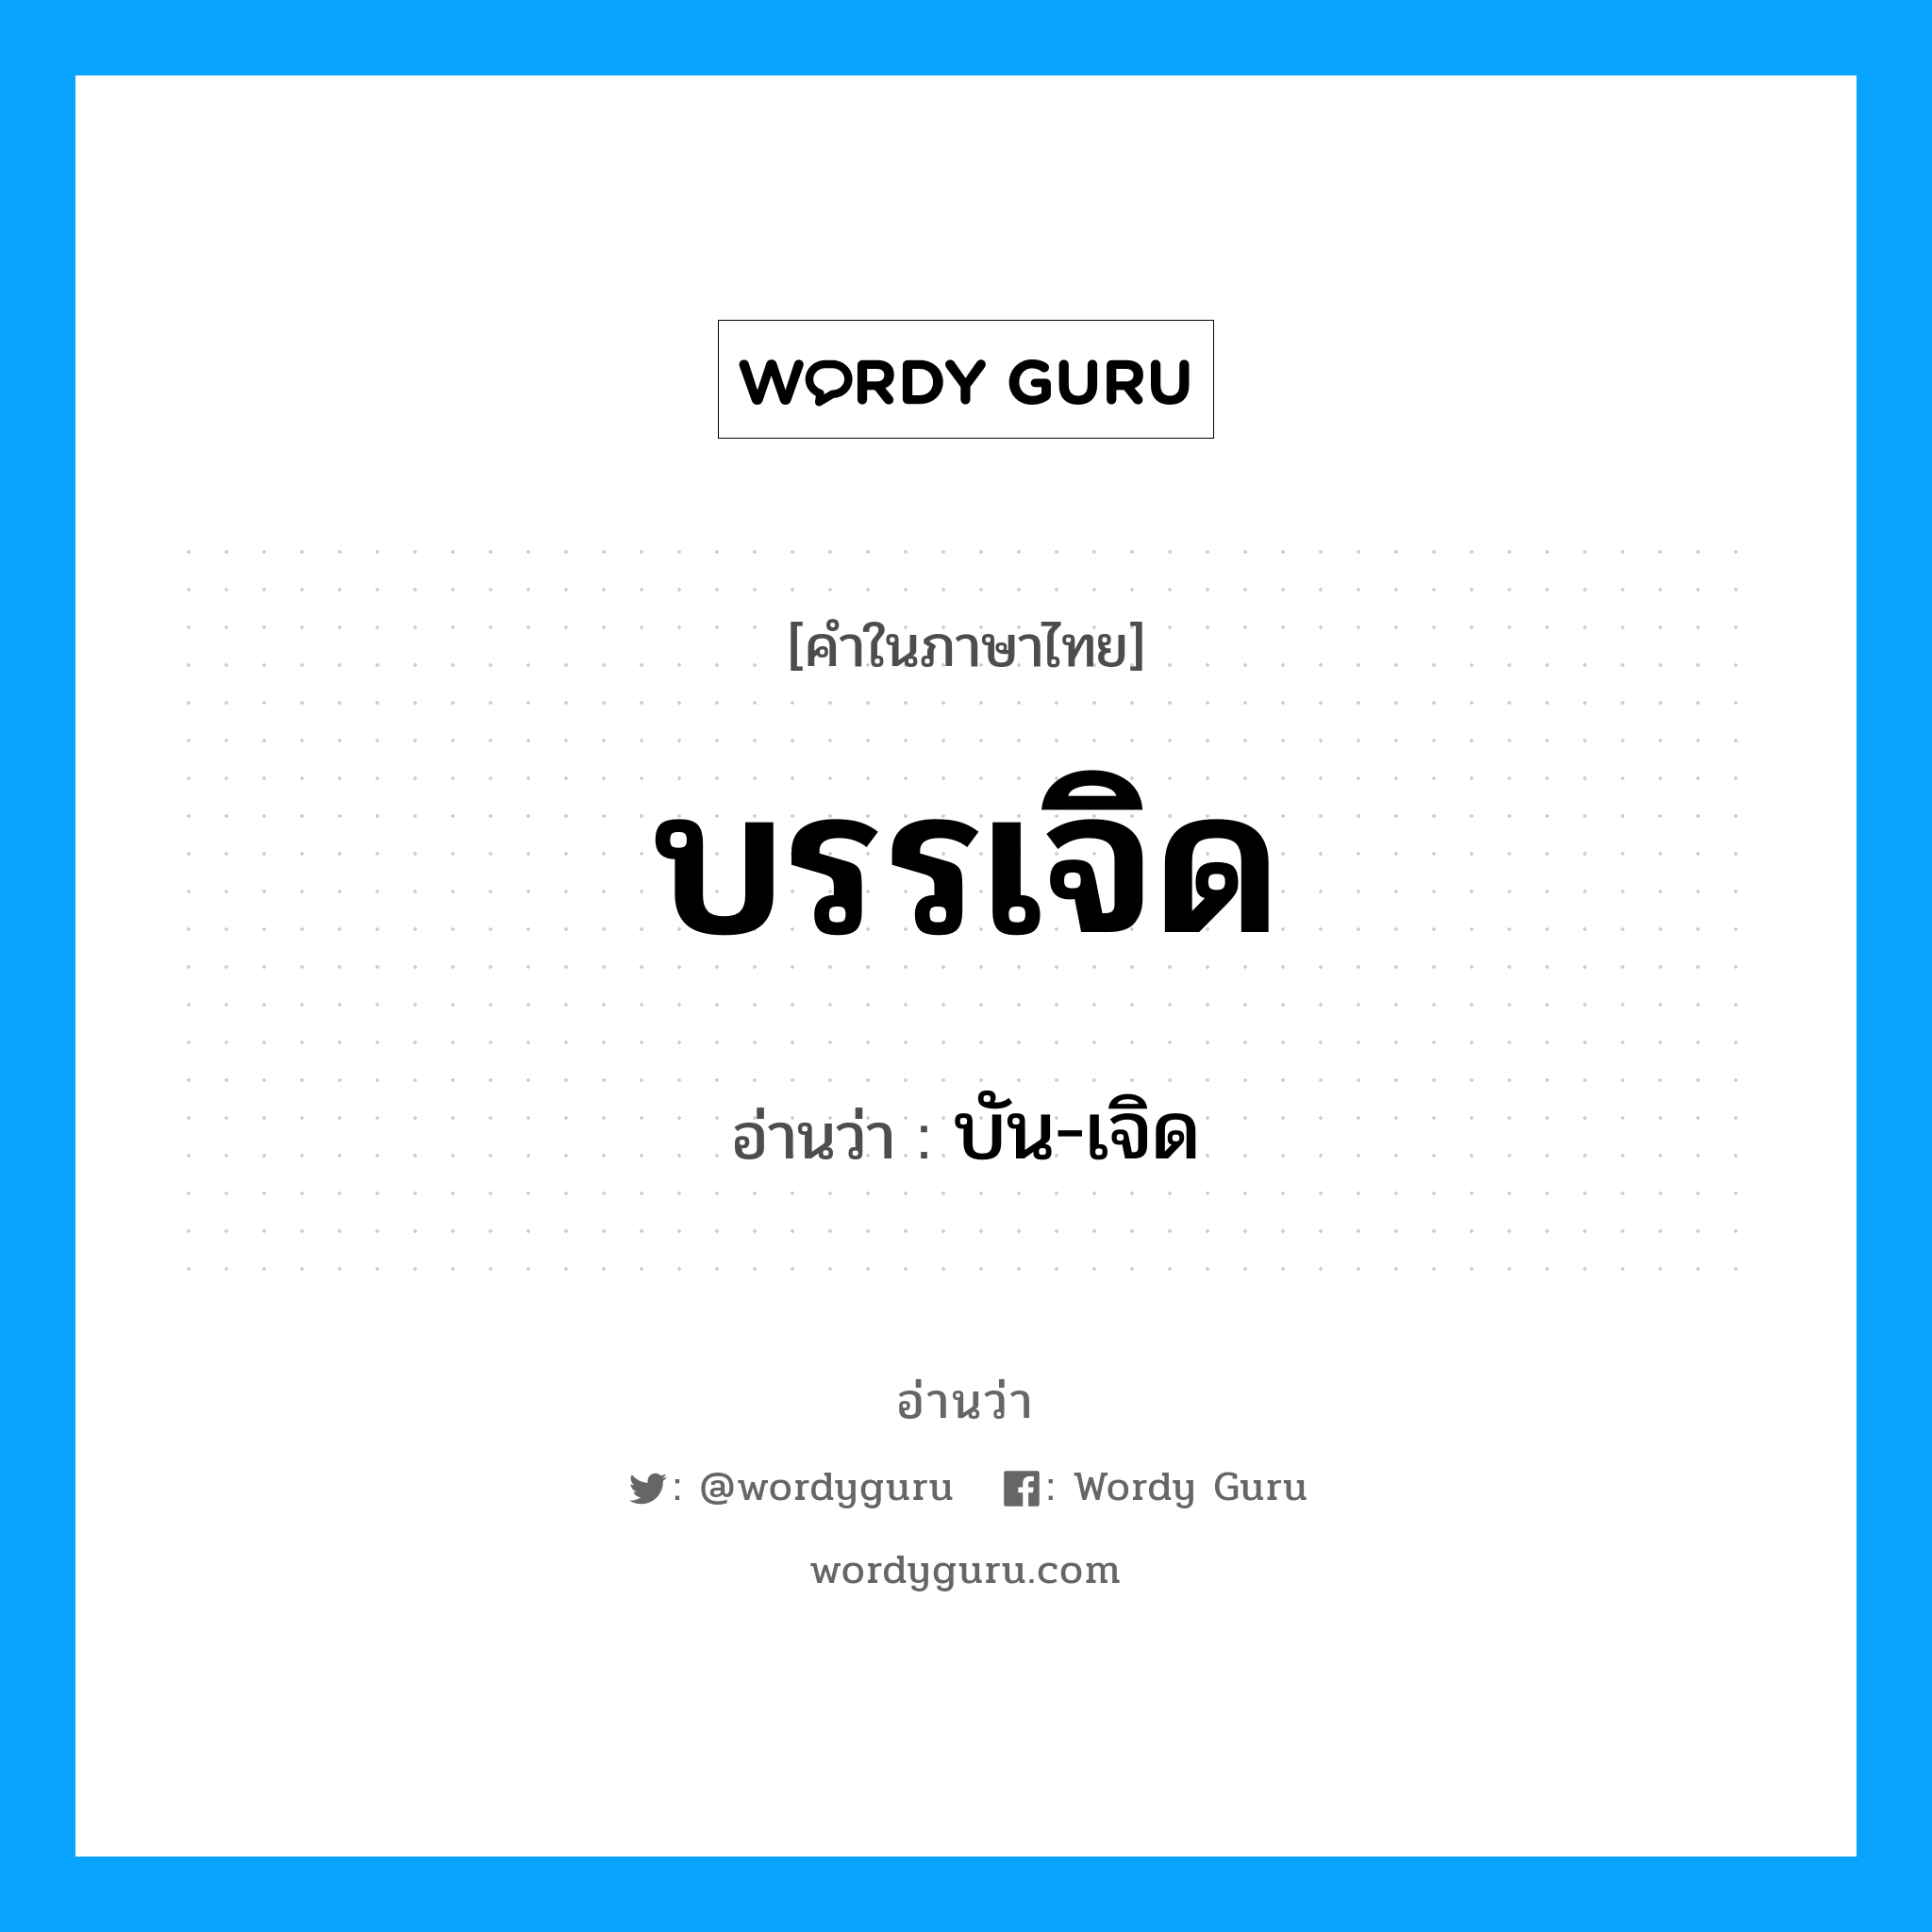 บัน-เจิด เป็นคำอ่านของคำไหน?, คำในภาษาไทย บัน-เจิด อ่านว่า บรรเจิด